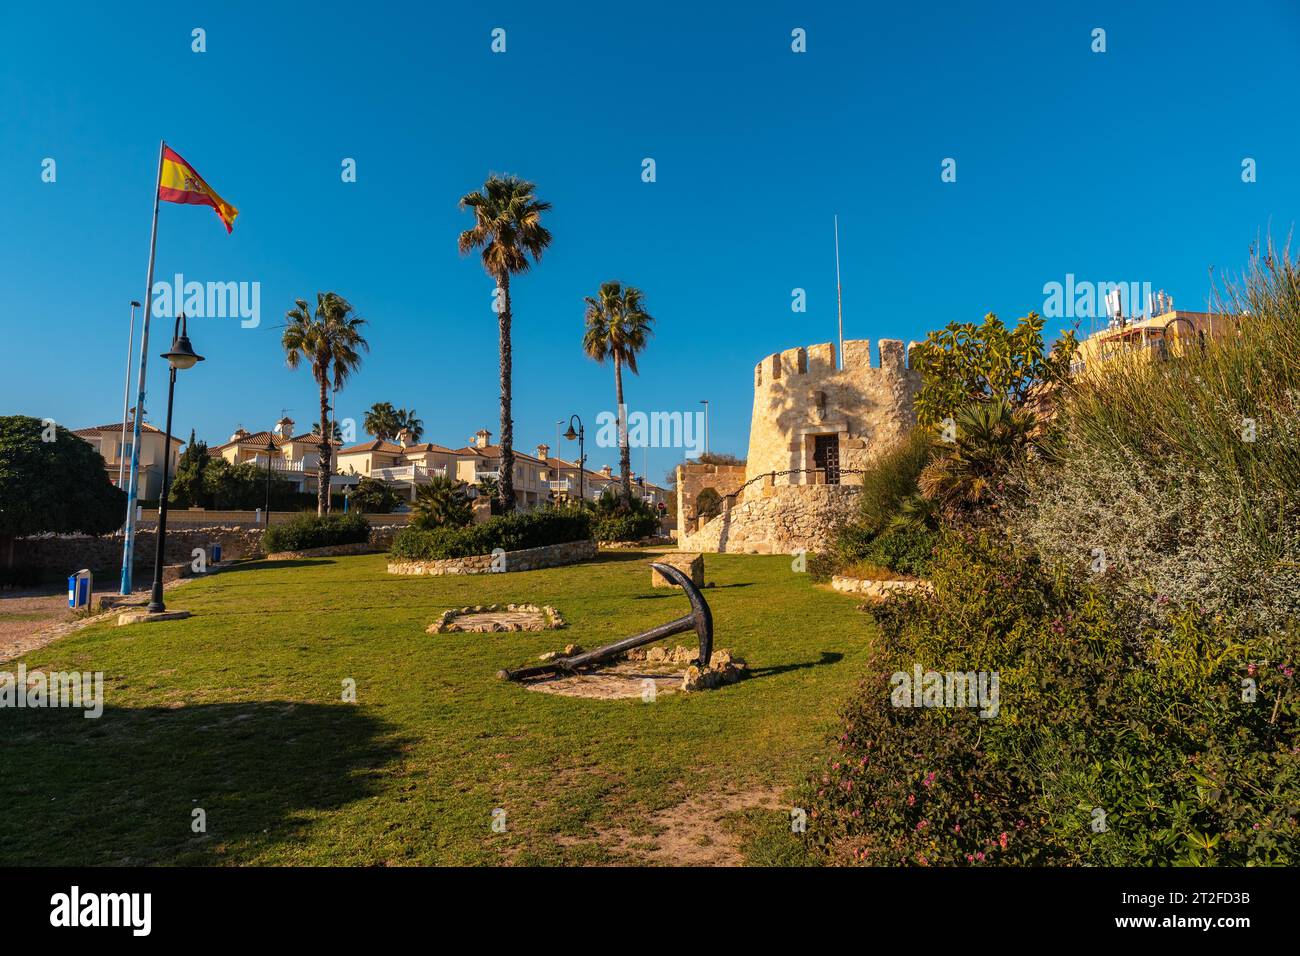 Wunderschöner Torre del Moro Park in der Küstenstadt Torrevieja, Alicante, Valencianische Gemeinde. Spanien, Mittelmeer an der Costa Blanca Stockfoto